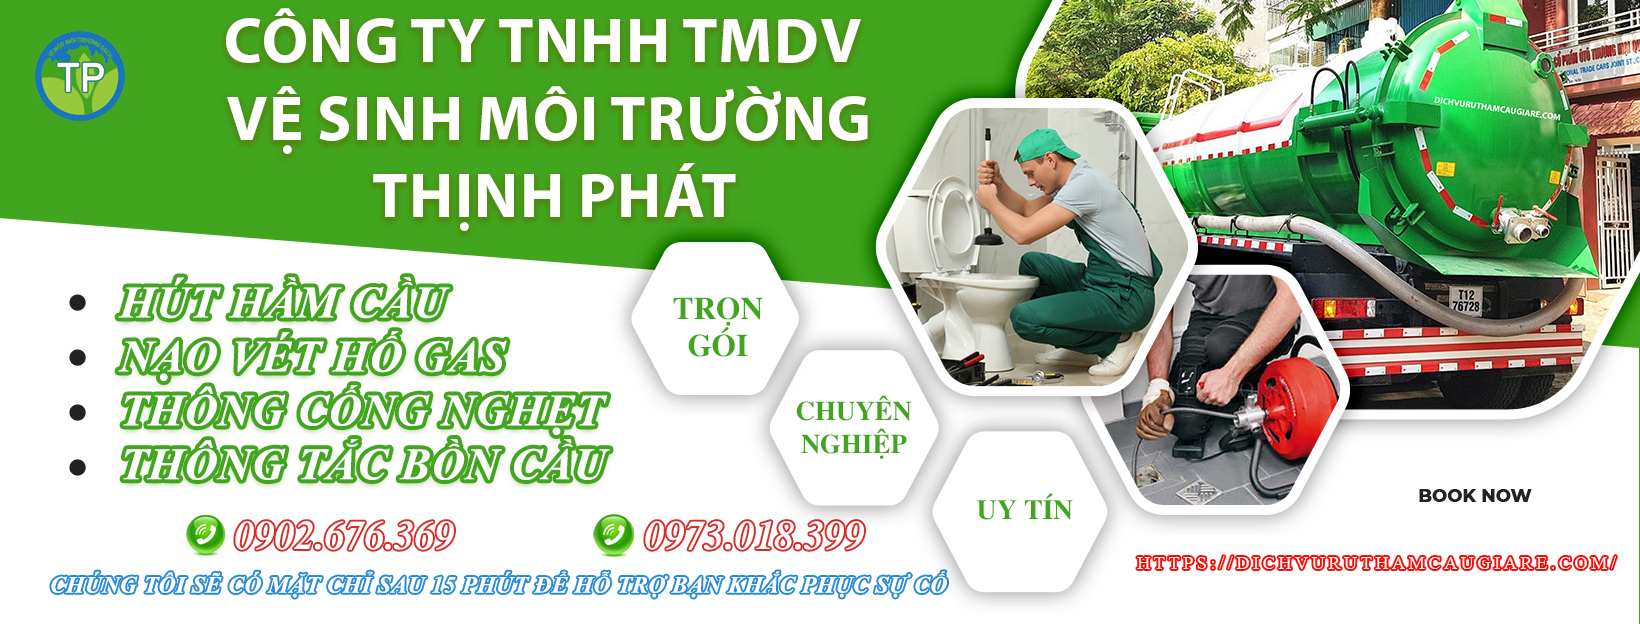 Giới thiệu Công ty TNHH TMDV Vệ Sinh Môi Trường Thịnh Phát